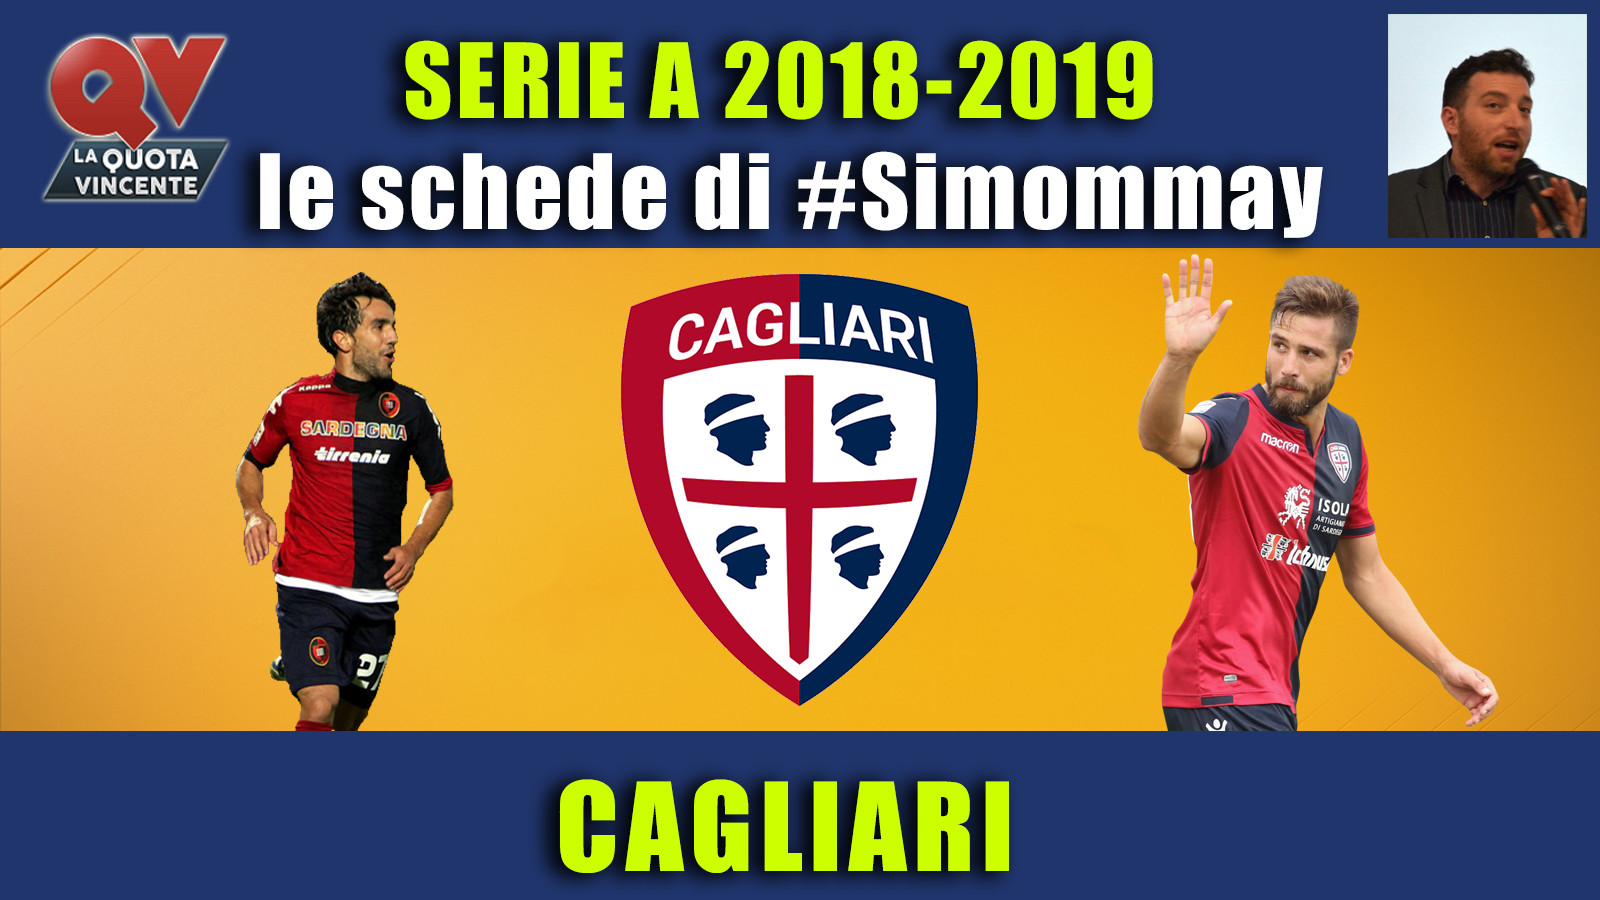 Guida Serie A 2018-2019 CAGLIARI: l'esperienza di Maran per i Sardi